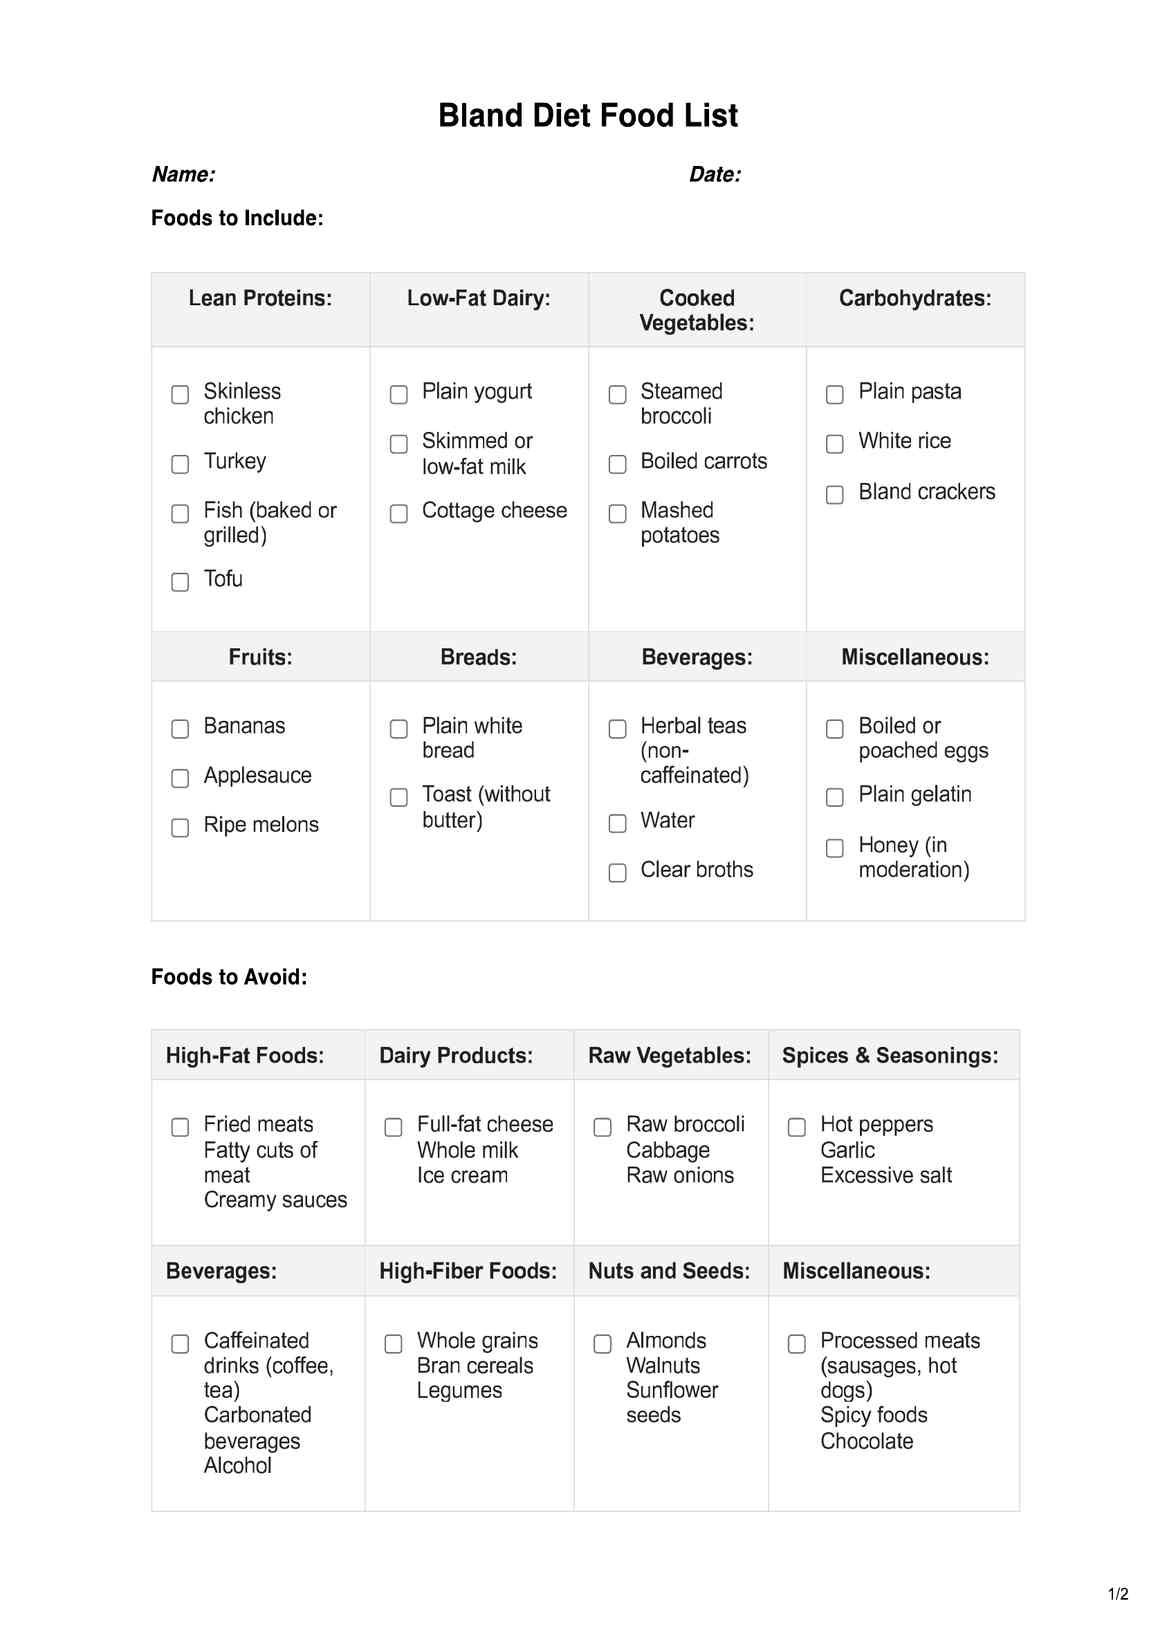 Bland diet food list PDF PDF Example